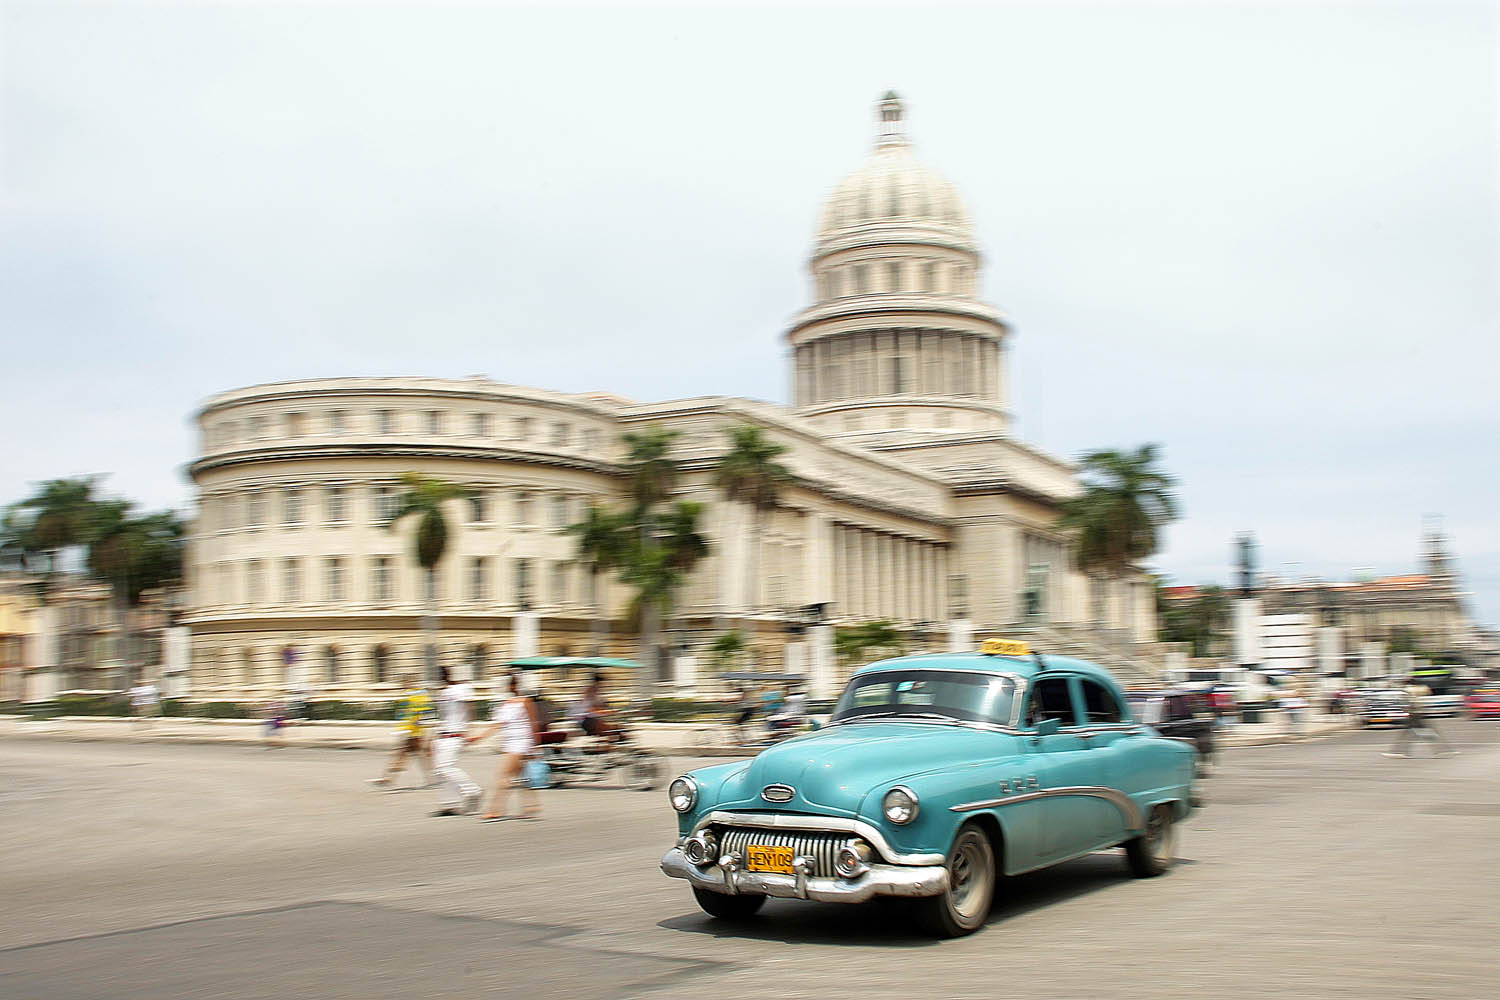 A washingtoni Capitolium kicsinyített mása Havannában